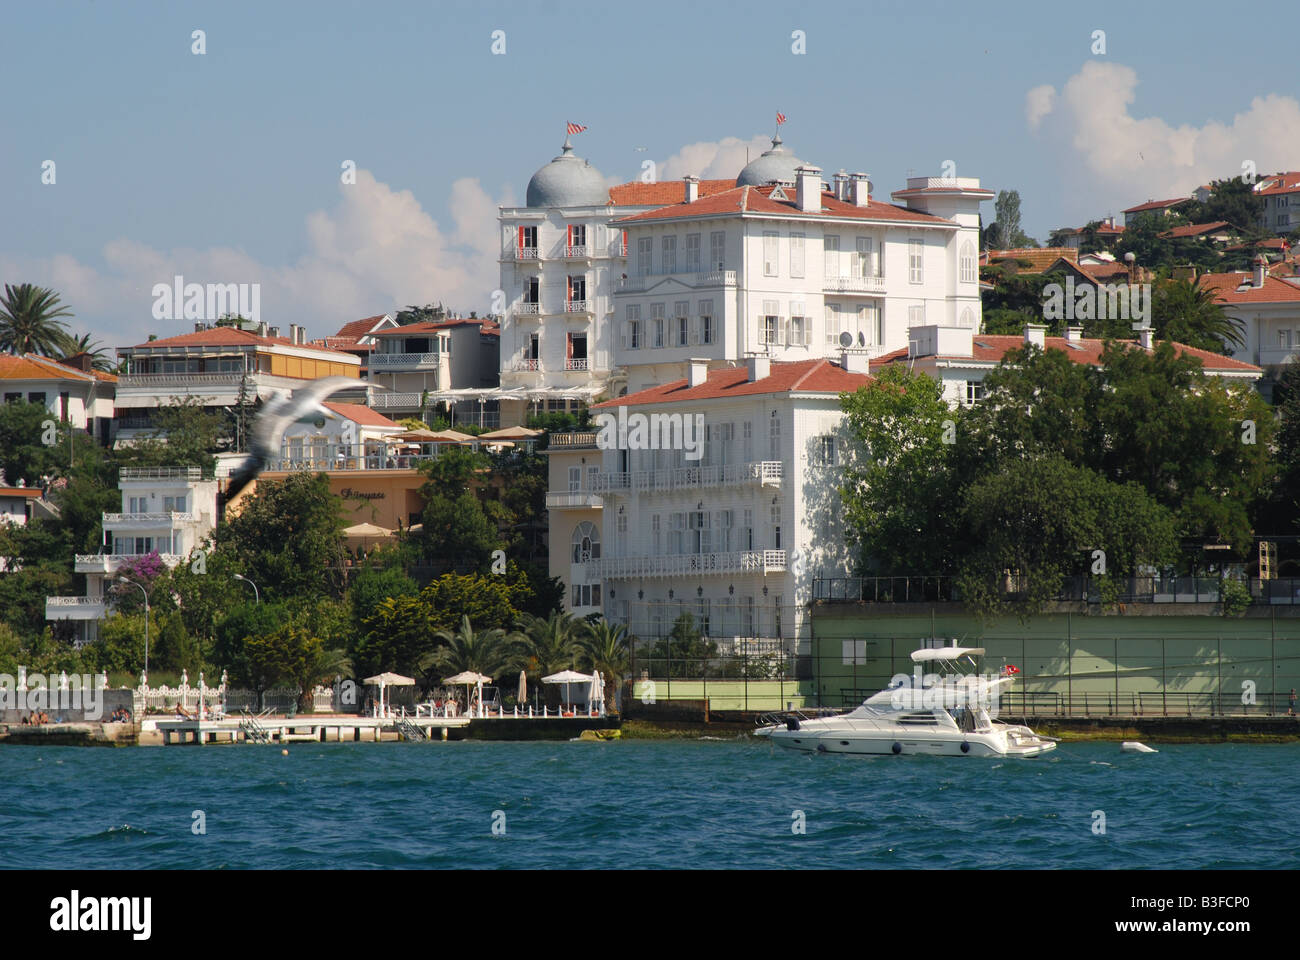 ISTANBUL. Buyukada, una delle Isole dei Principi nel Mar di Marmara, con lo splendido Palas Hotel domina la scena. 2008. Foto Stock